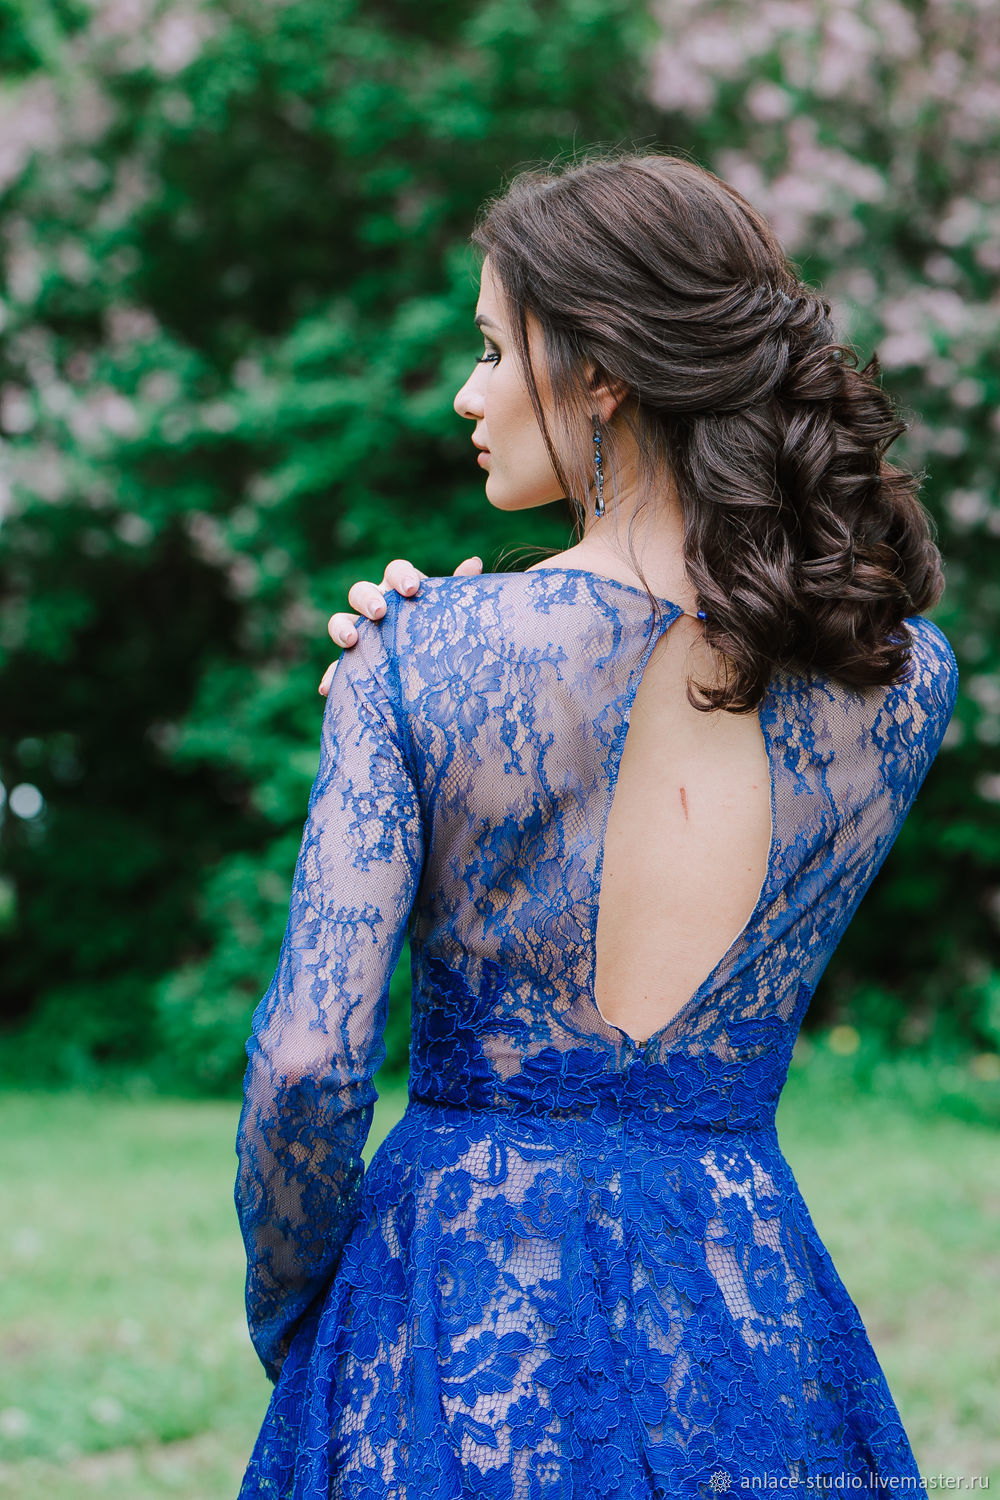 Элегантное вечернее синее платье